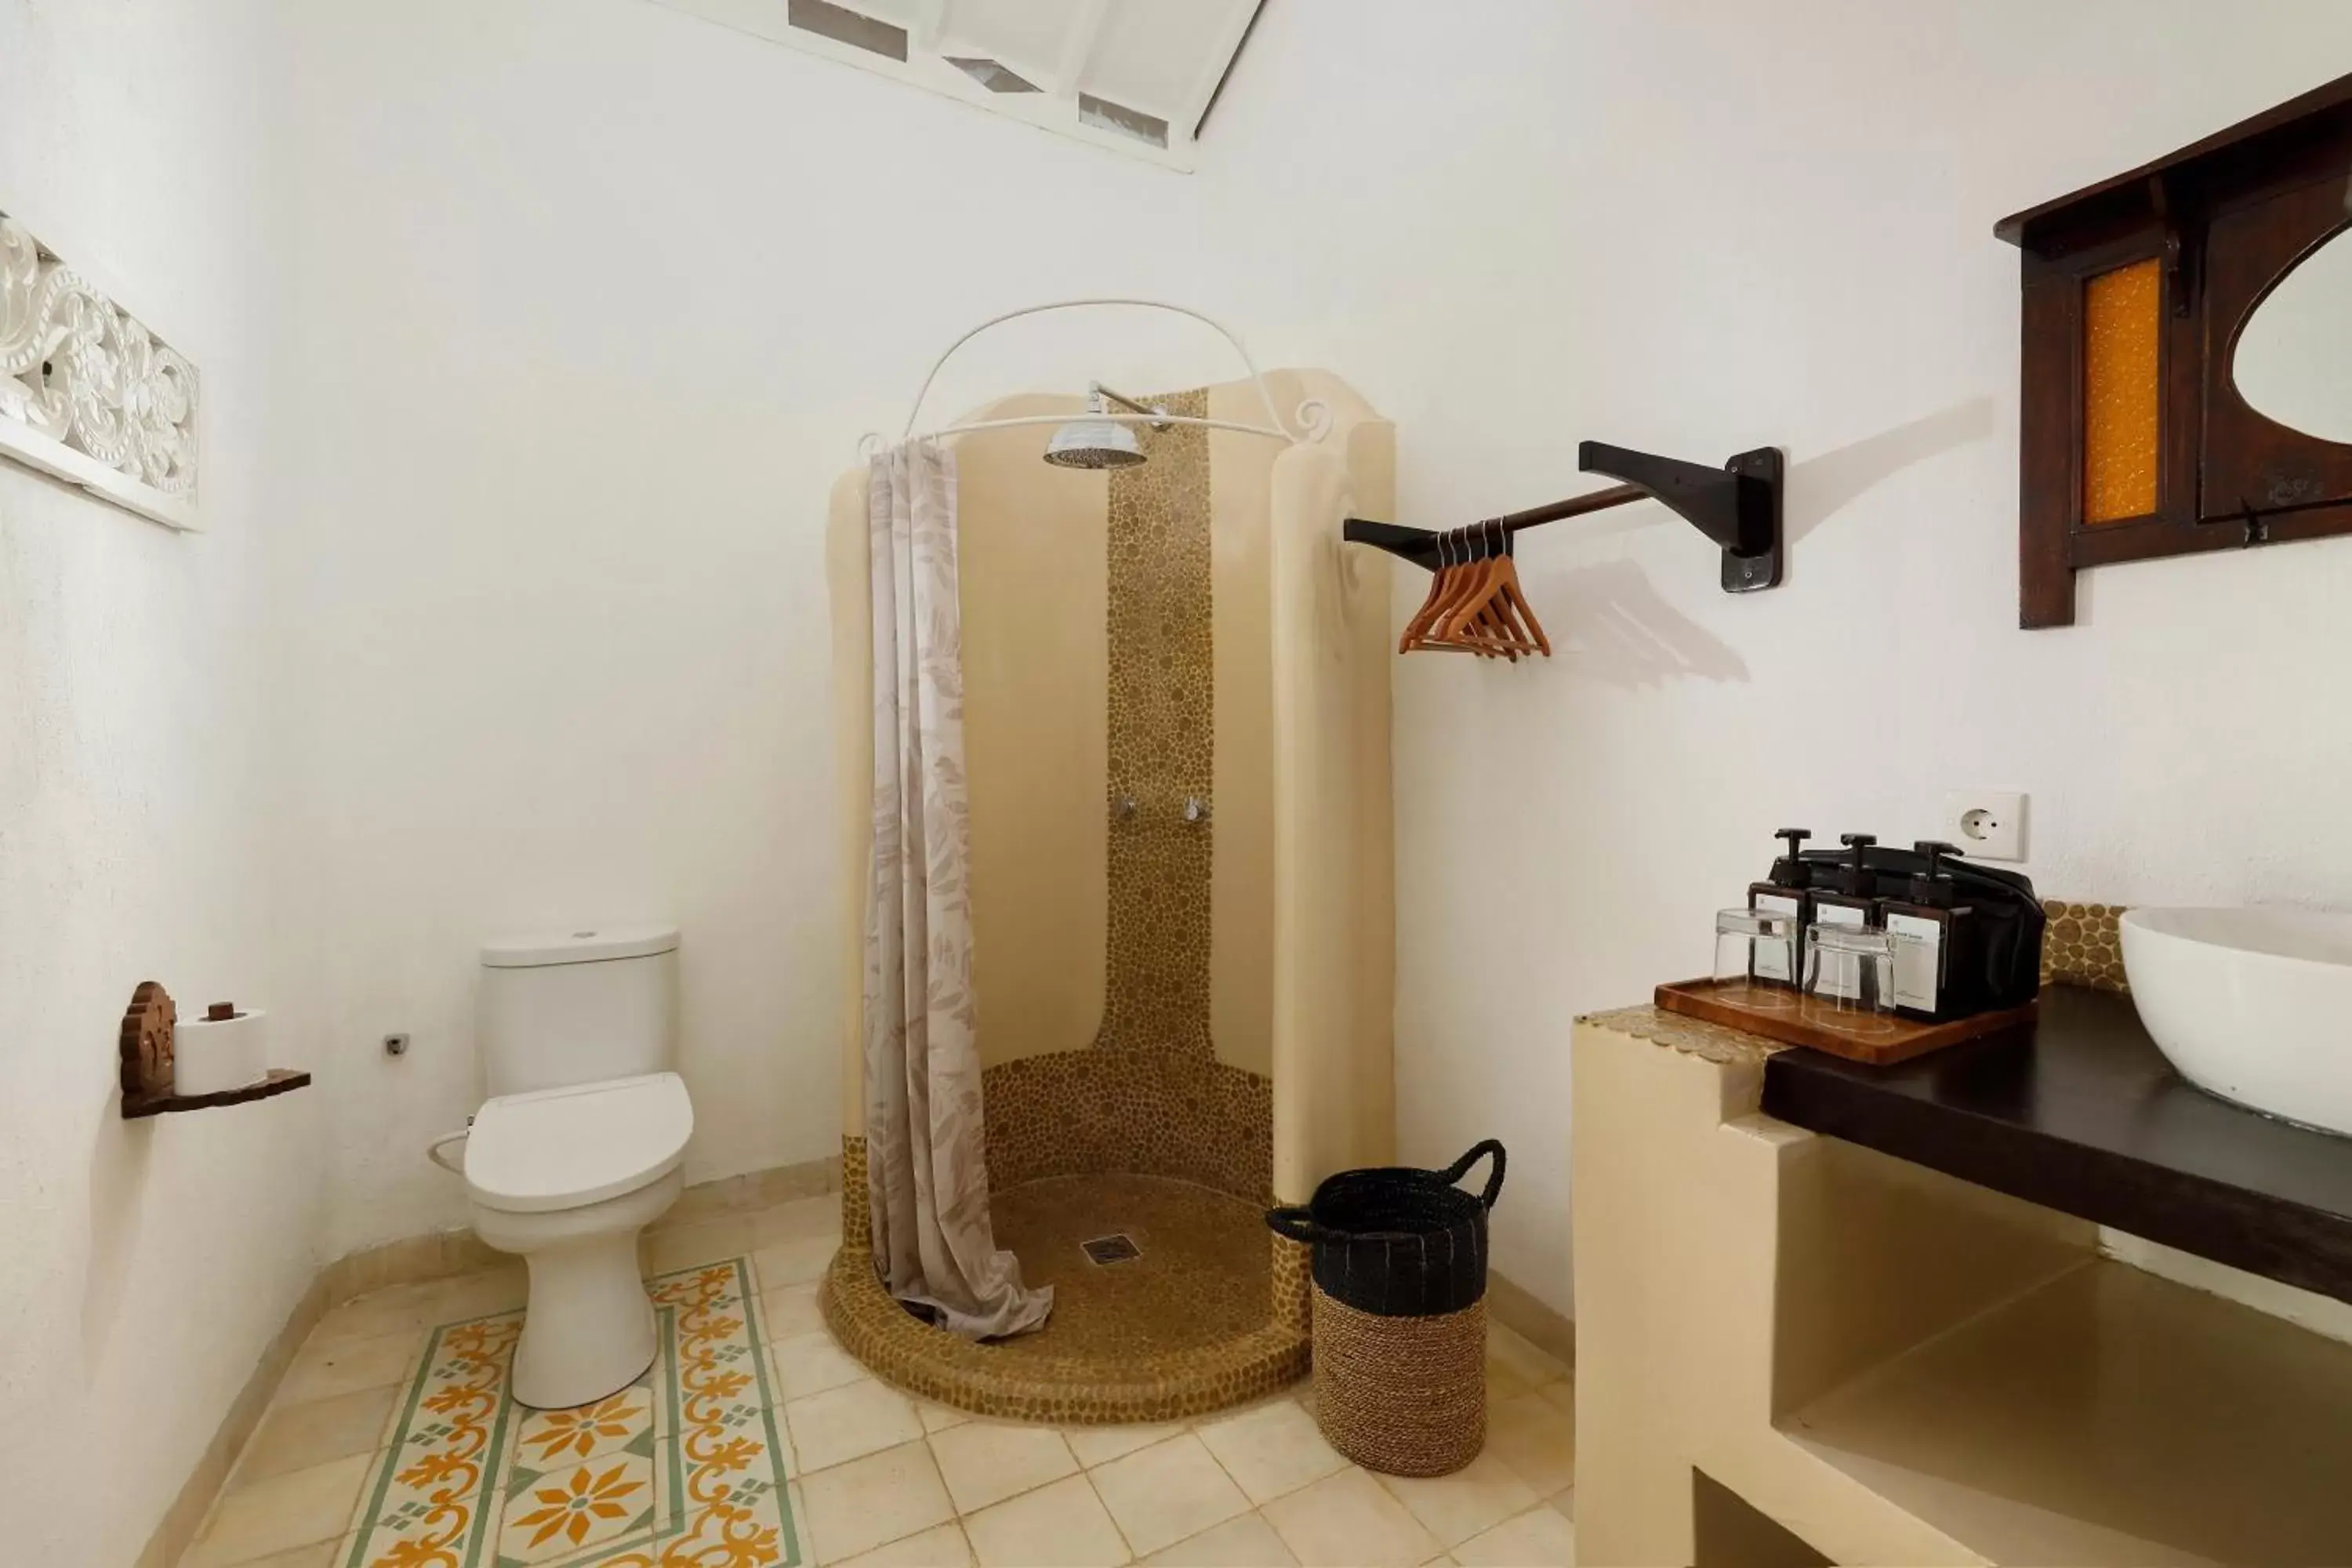 Toilet, Bathroom in Puri Tempo Doeloe Boutique Hotel